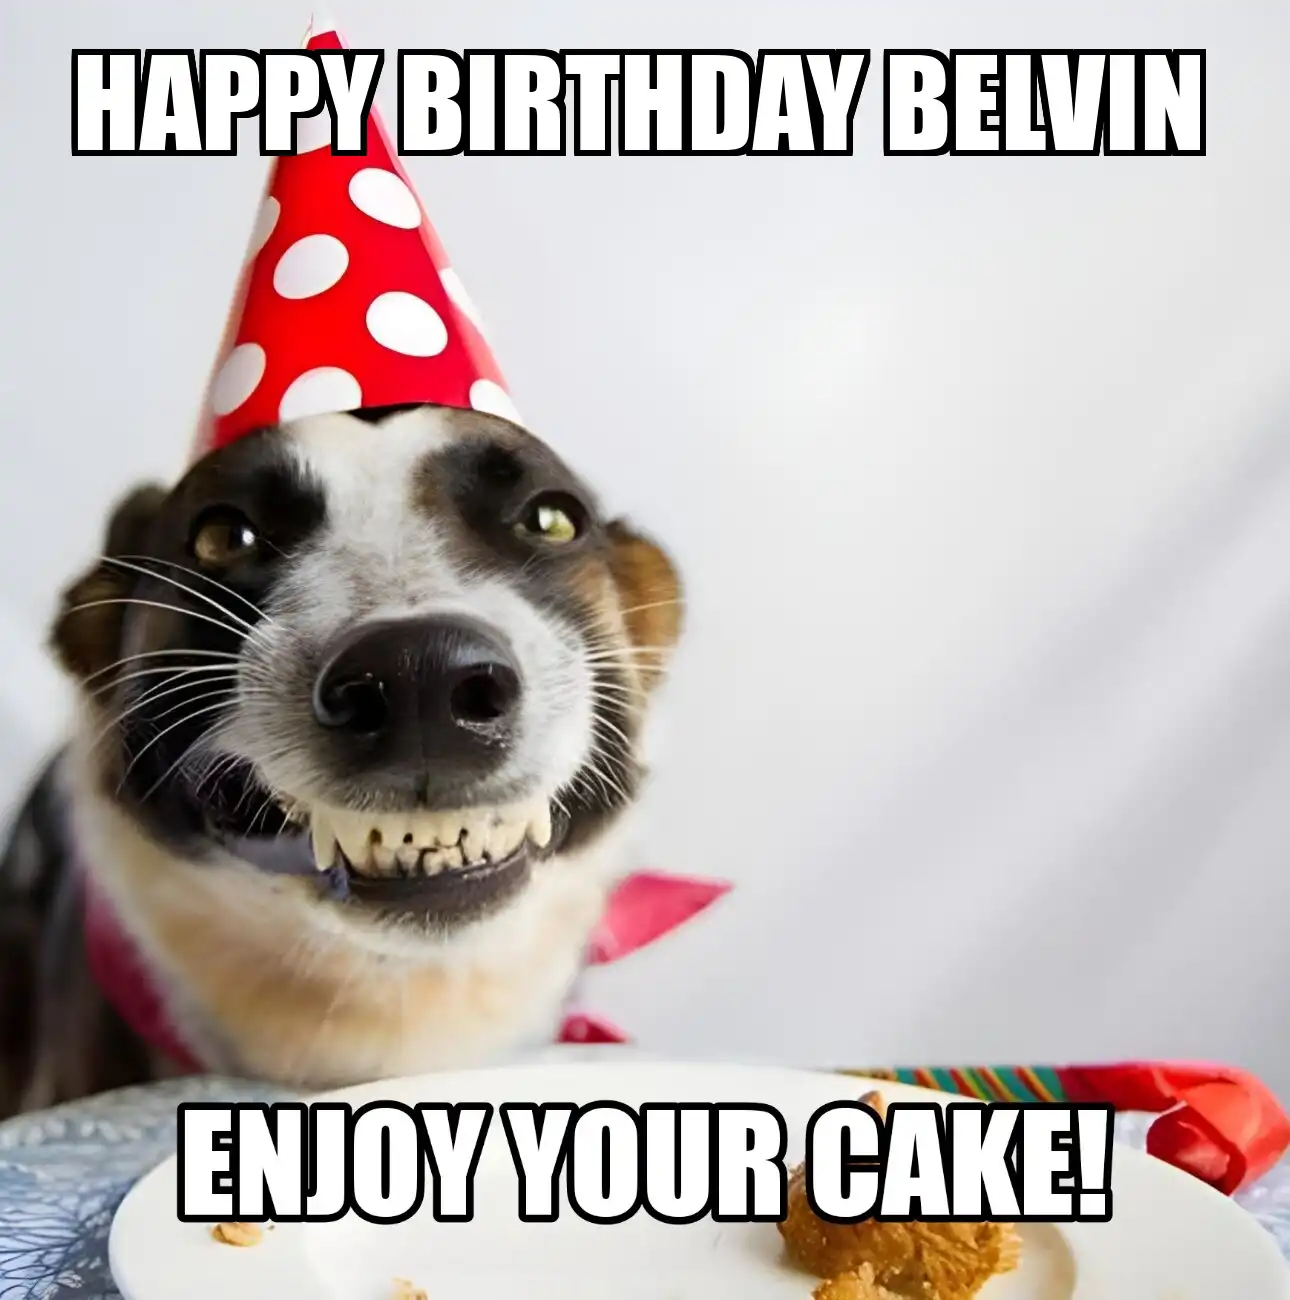 Happy Birthday Belvin Enjoy Your Cake Dog Meme